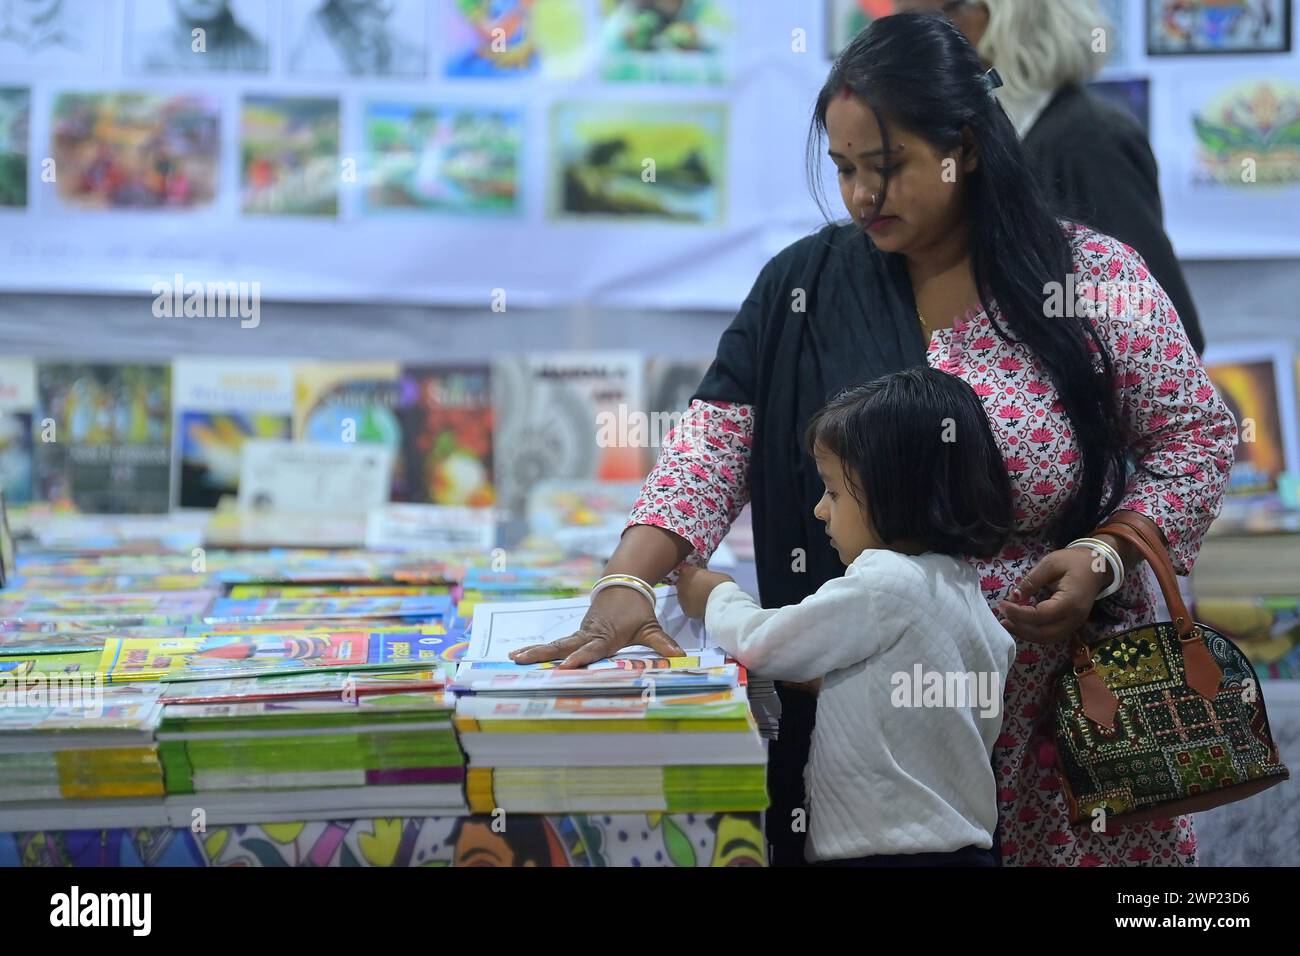 Persone che guardano i libri in una bancarella di libri al 42° Agartala Book Fair International Fair Ground, Hapania ad Agartala. Tripura, India. Foto Stock